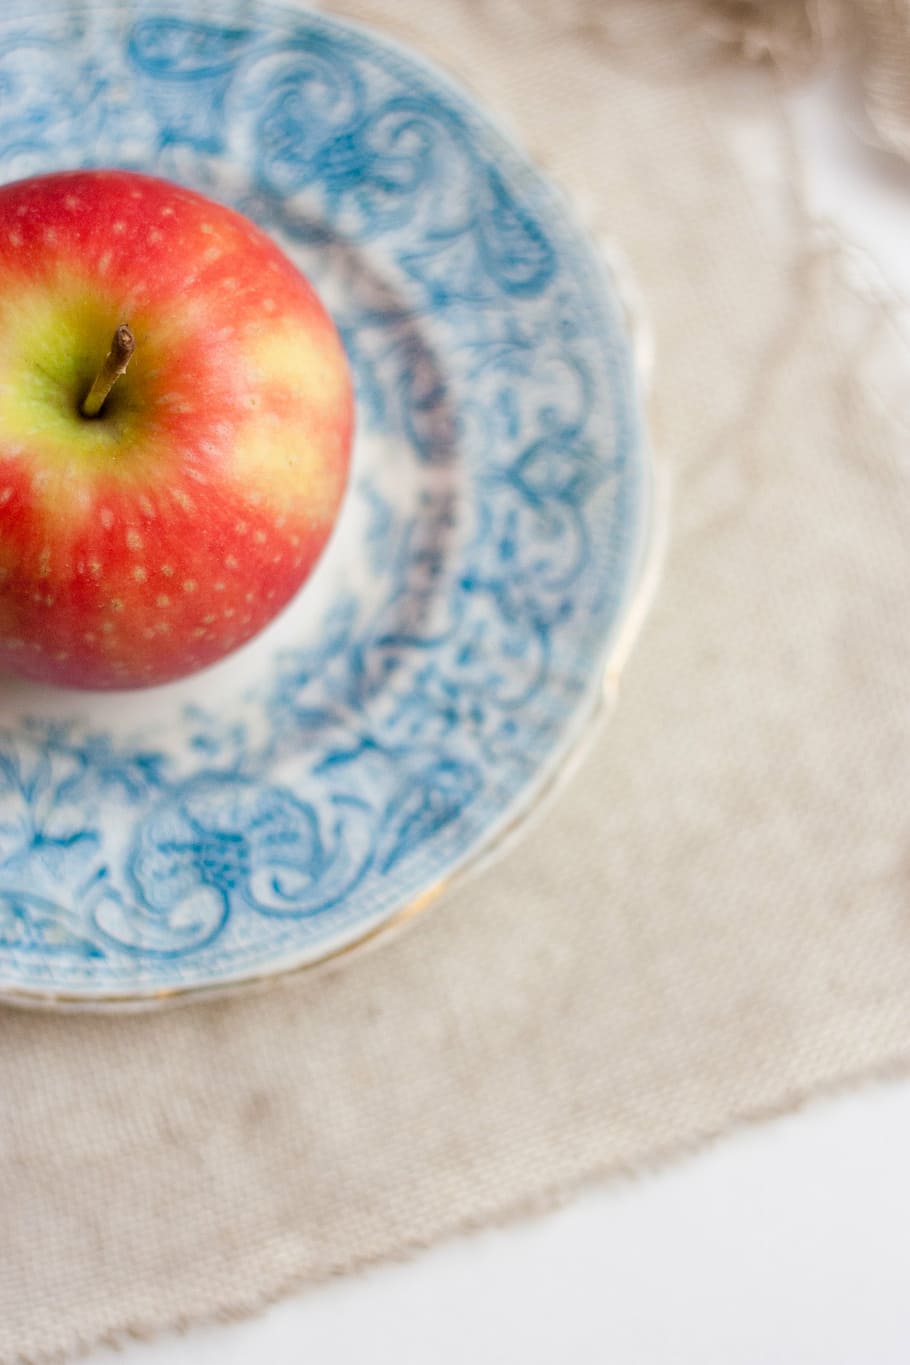 honeycrisp apple, blanco, azul, placa, rojo, manzana, floral, frutas, saludable, comida